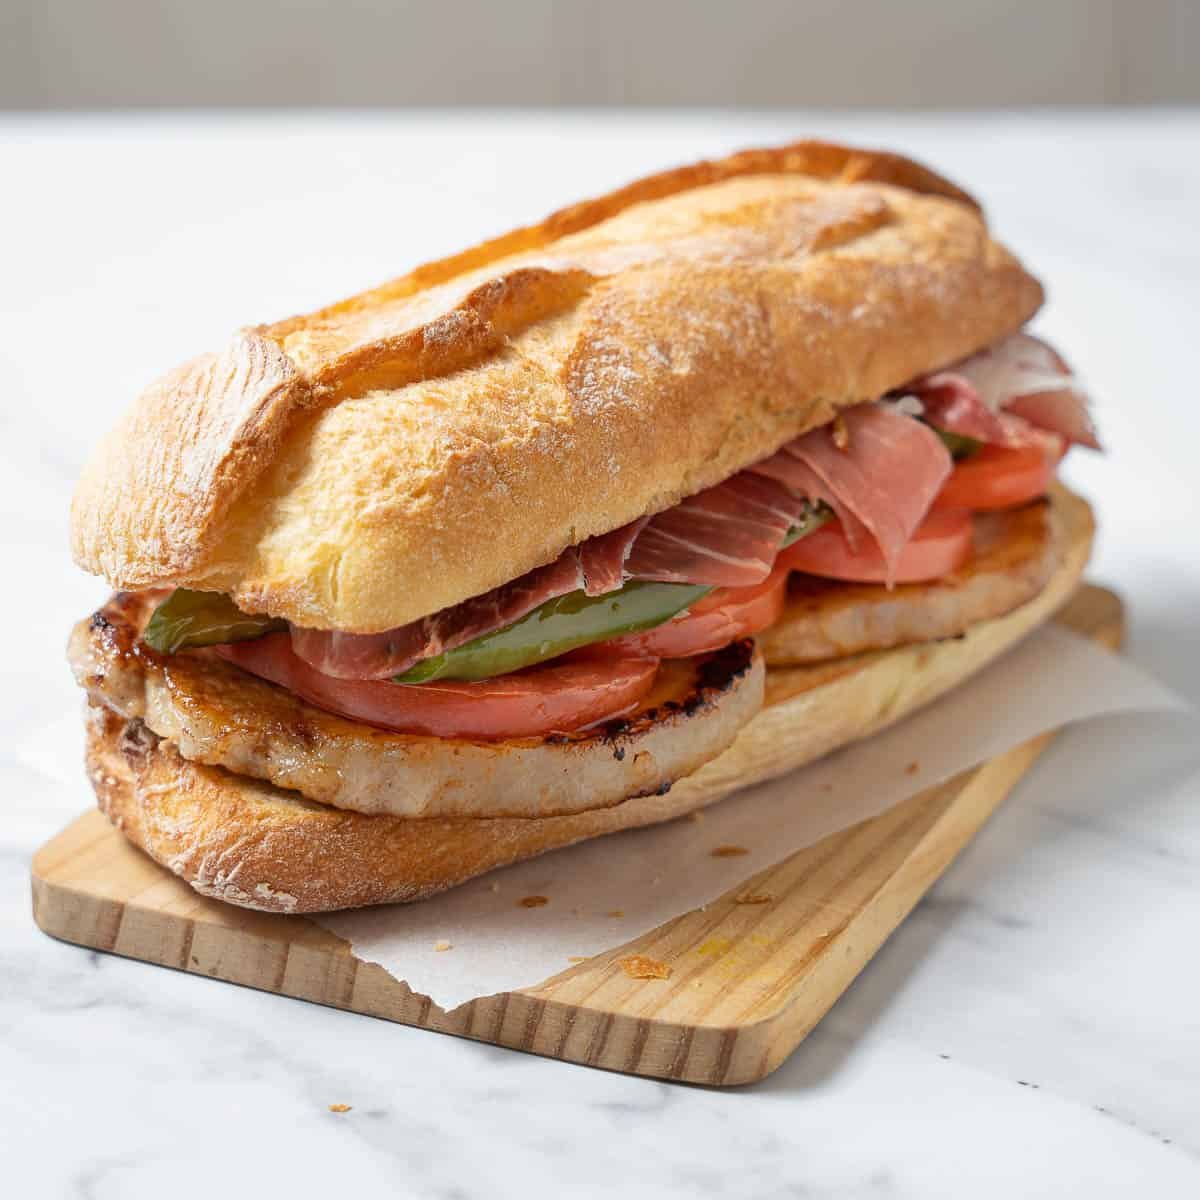 C'est le sandwich qu'il vous faut pour un déjeuner sur le pouce, el Serranito ☀️

Du jambon serrano, de l'échine, des tomates, des poivrons et de l'huile d'olive. Il peut être complété par de l'aïoli et des frites. 

Idéal si vous êtes en pleine feria💃 

#FeriadeSevilla24